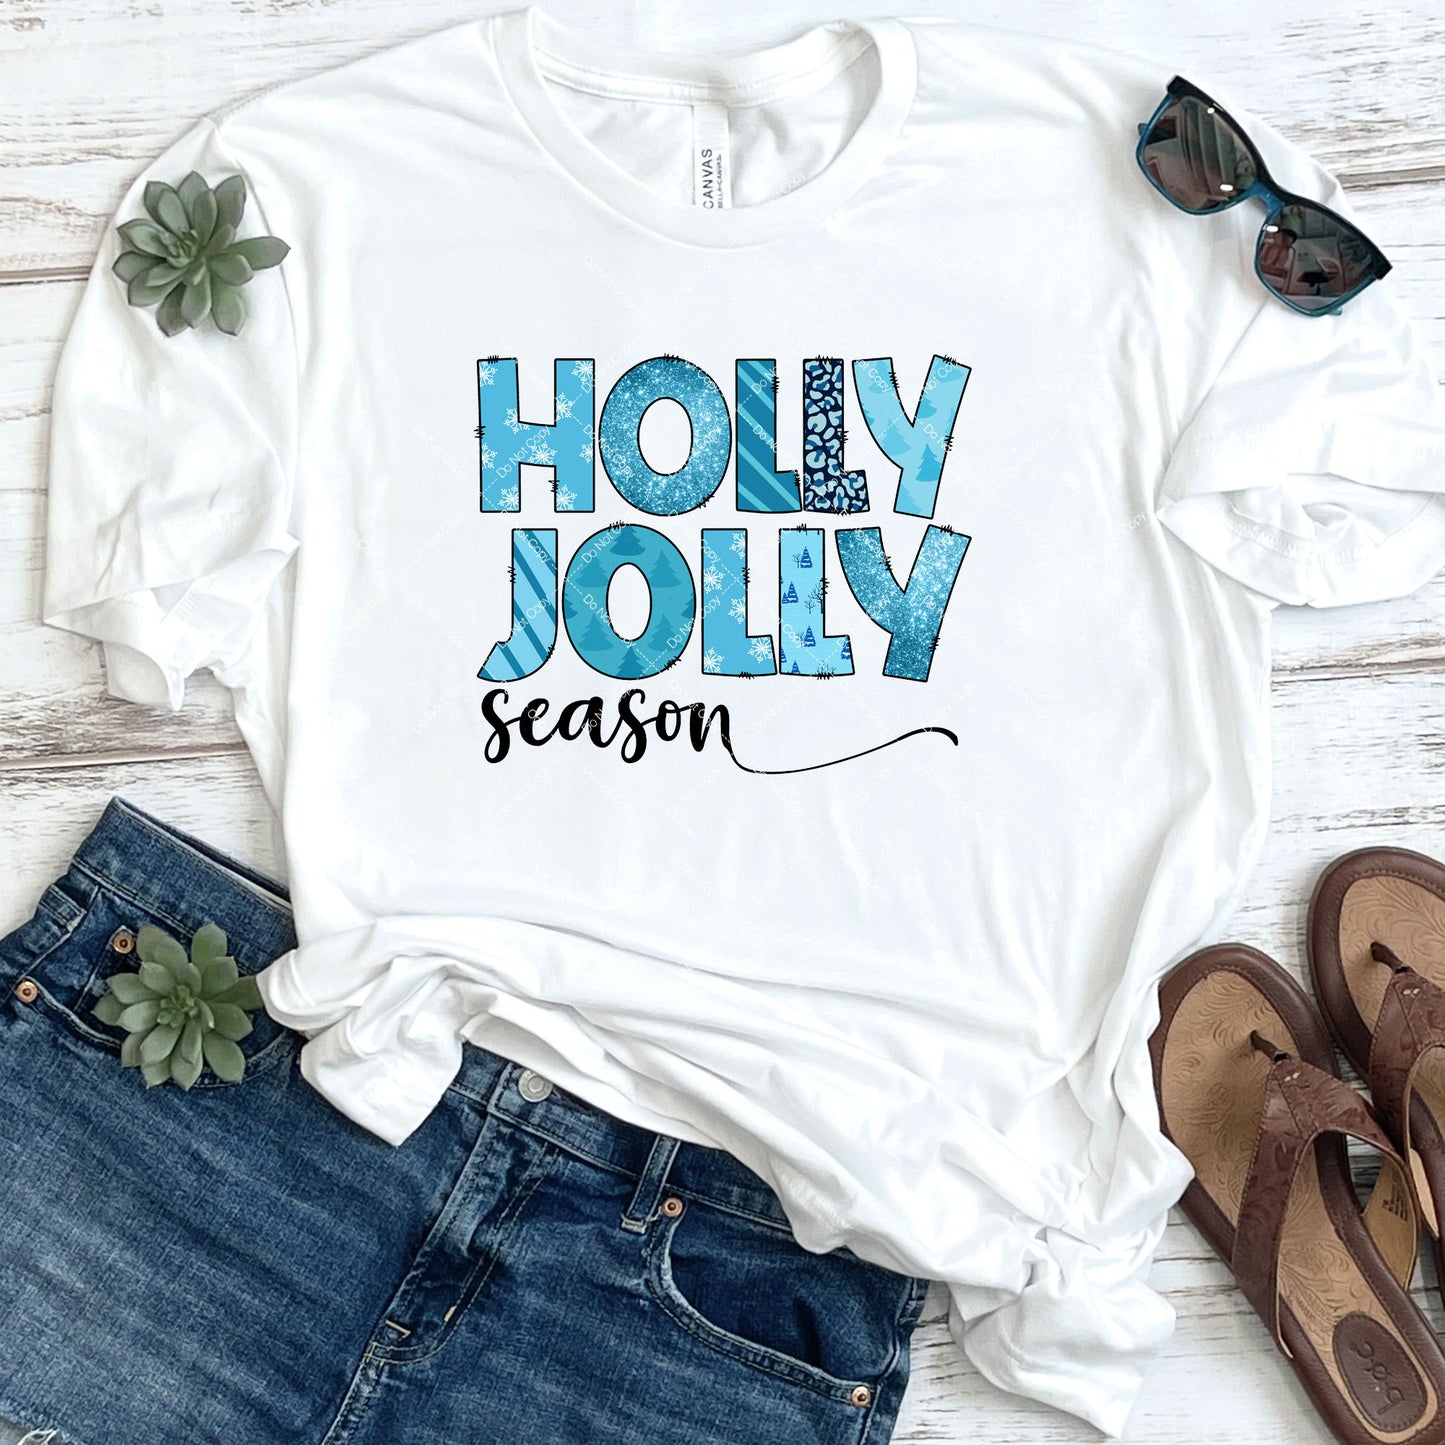 Holly Jolly Season DTF